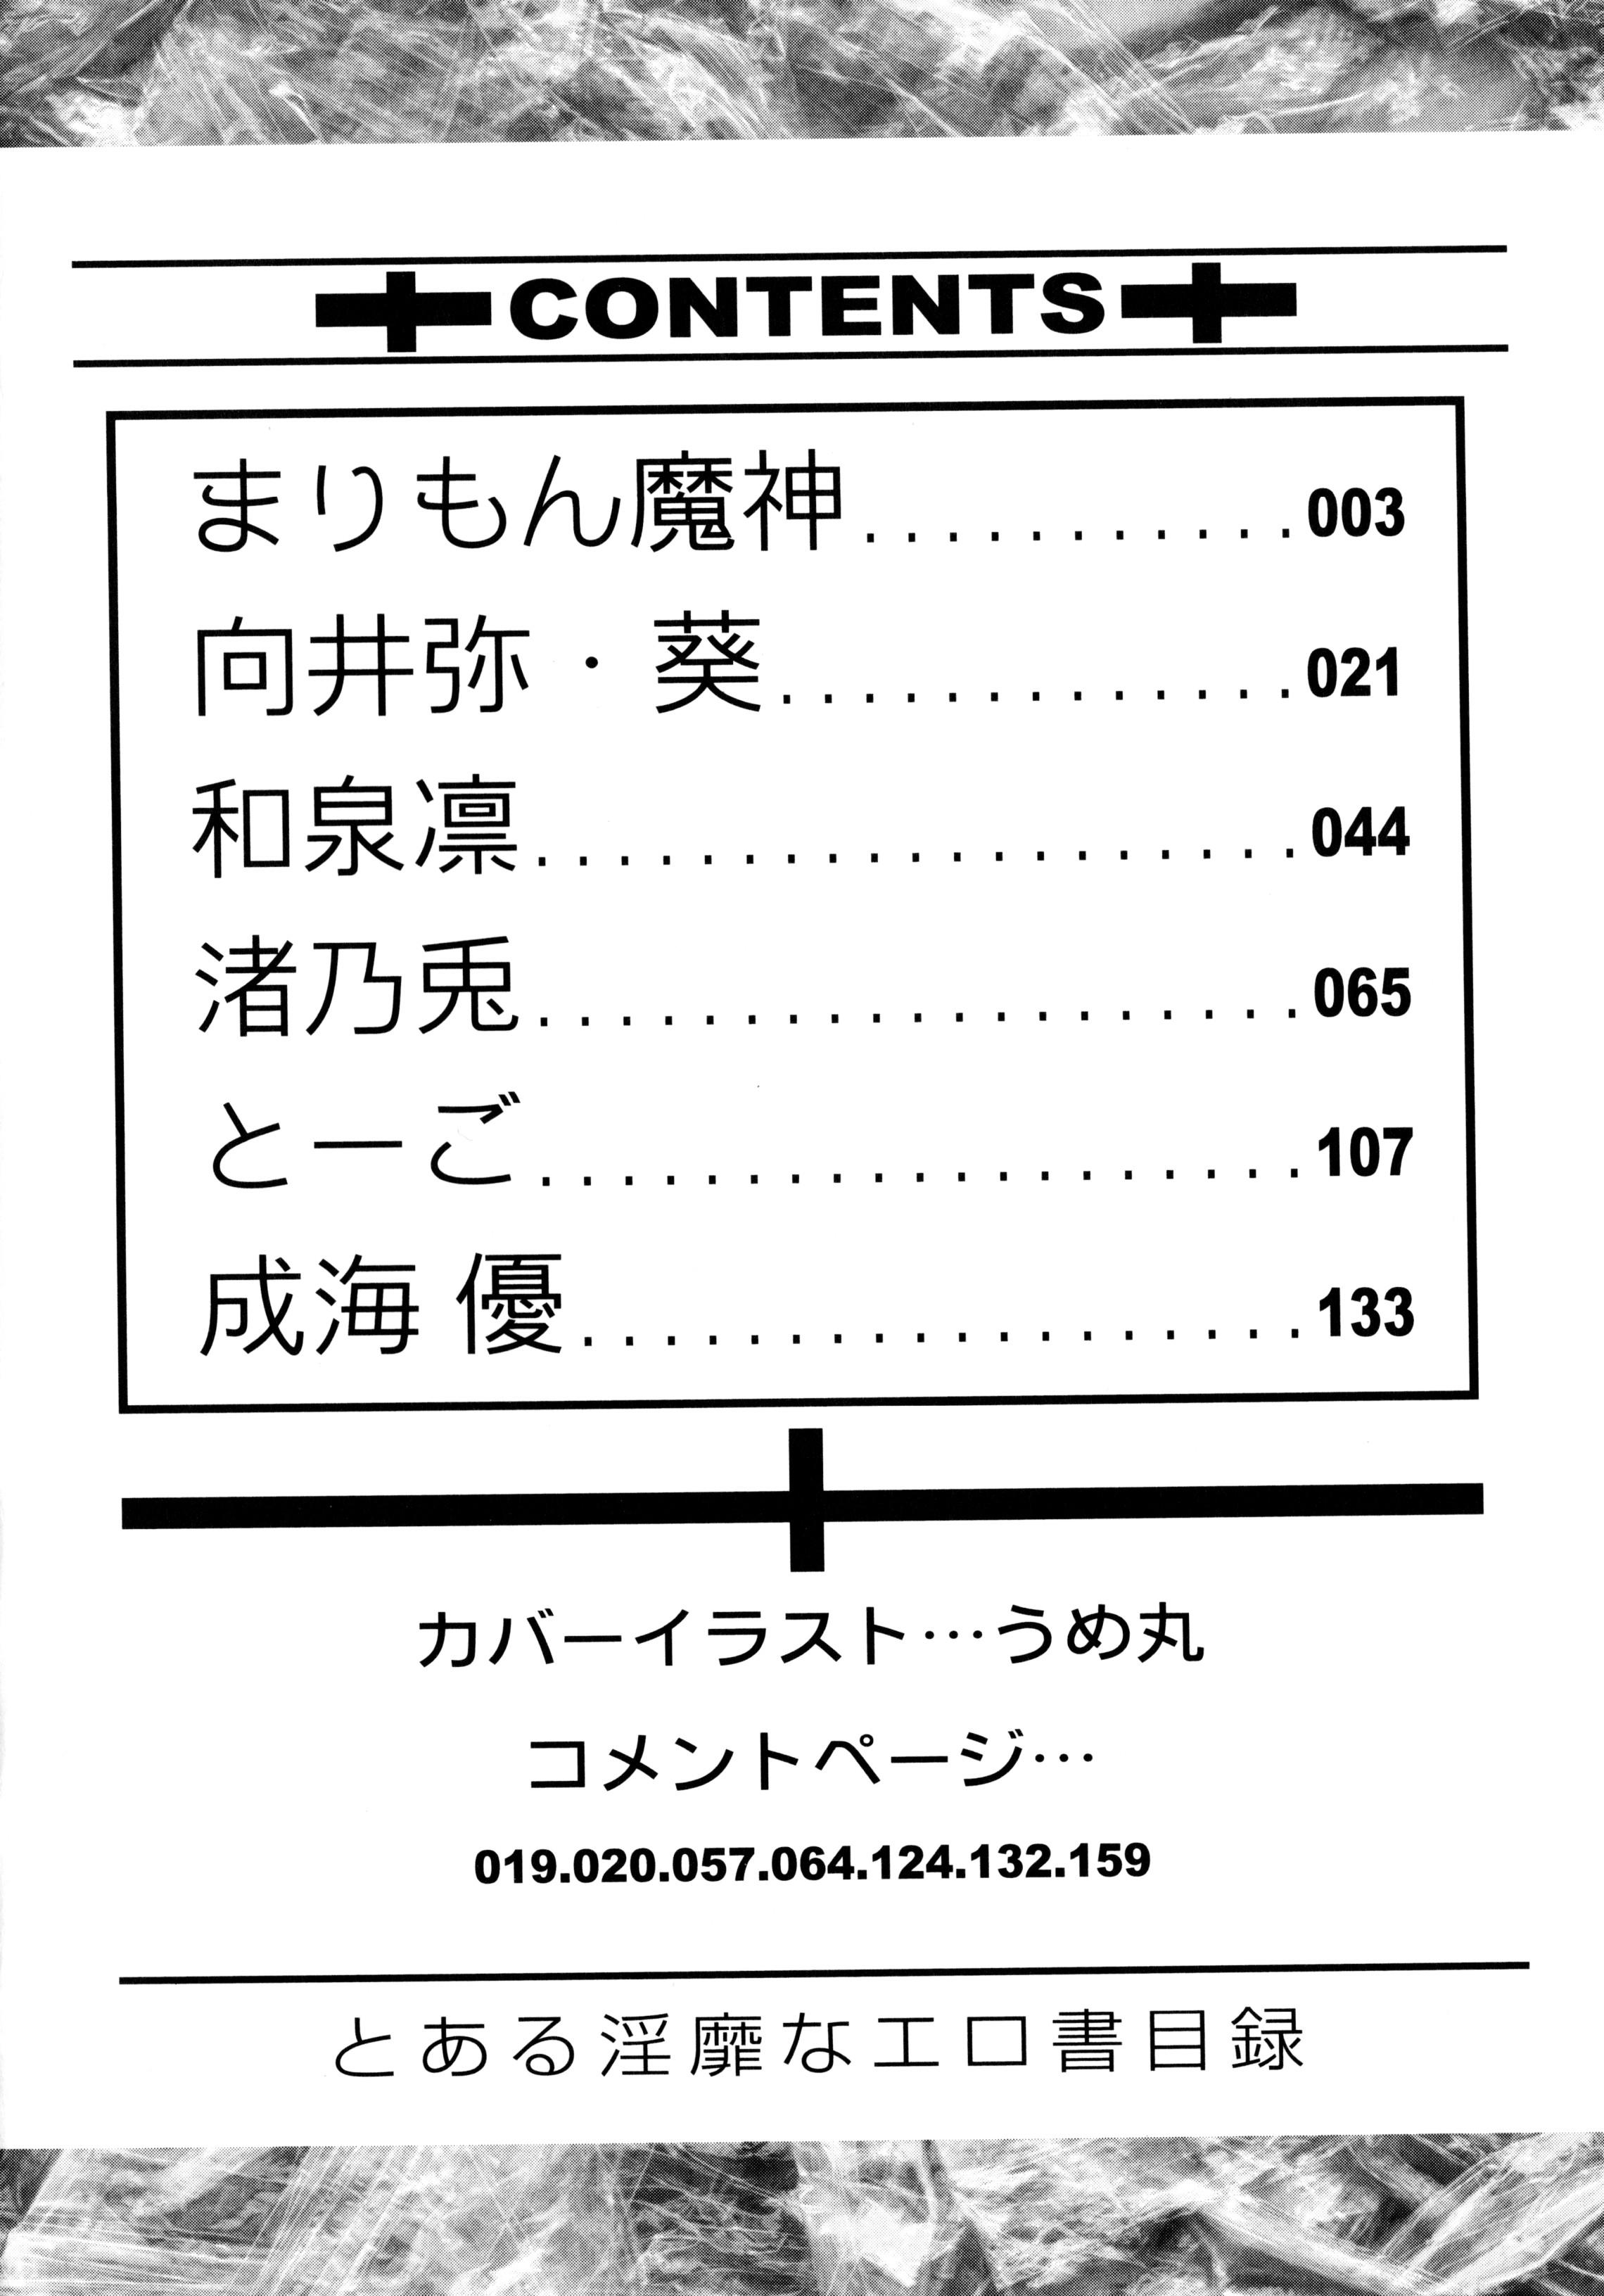 Amature Toaru Inbi na Erosho Mokuroku - Toaru kagaku no railgun Toaru majutsu no index Thylinh - Page 4